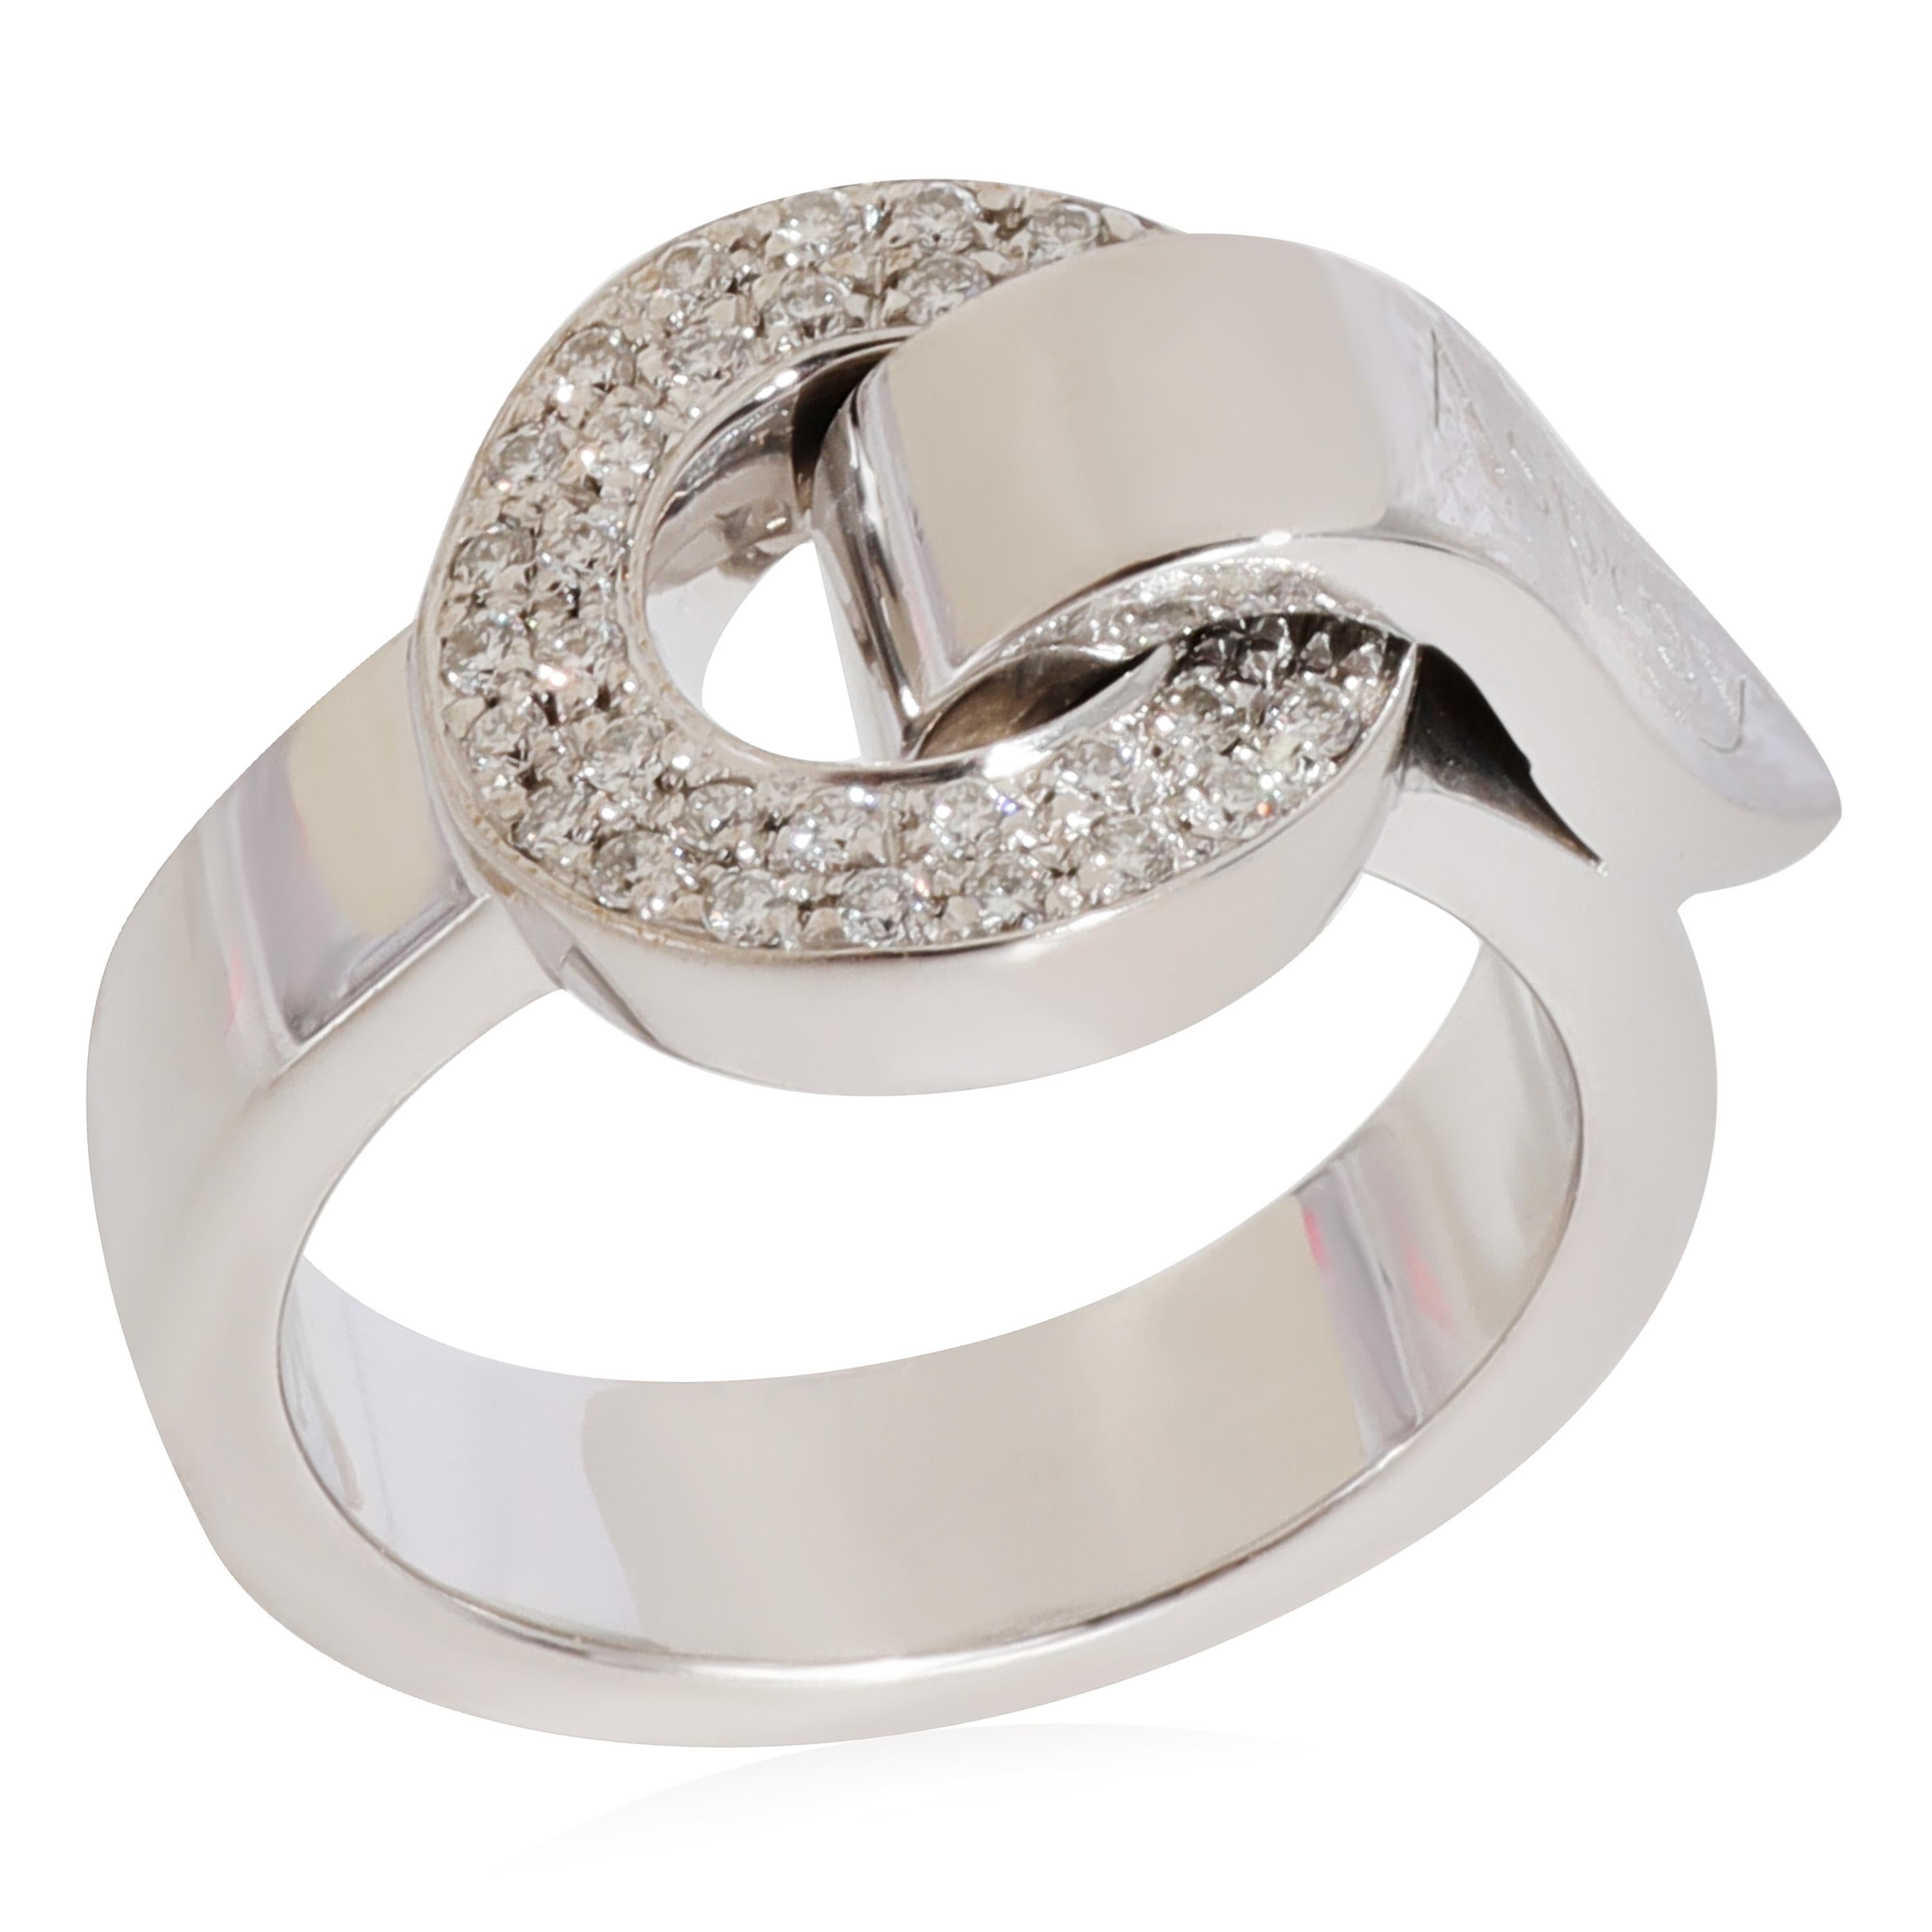 Asprey Diamant  Ring aus 18k Weißgold 0,2 CTW

PRIMÄRE DETAILS
SKU: 125167
Titel der Auflistung: Asprey Diamant  Ring aus 18k Weißgold 0,2 CTW
Bedingung Beschreibung: Verkauft für 3200 USD. In ausgezeichnetem Zustand und kürzlich poliert. Die